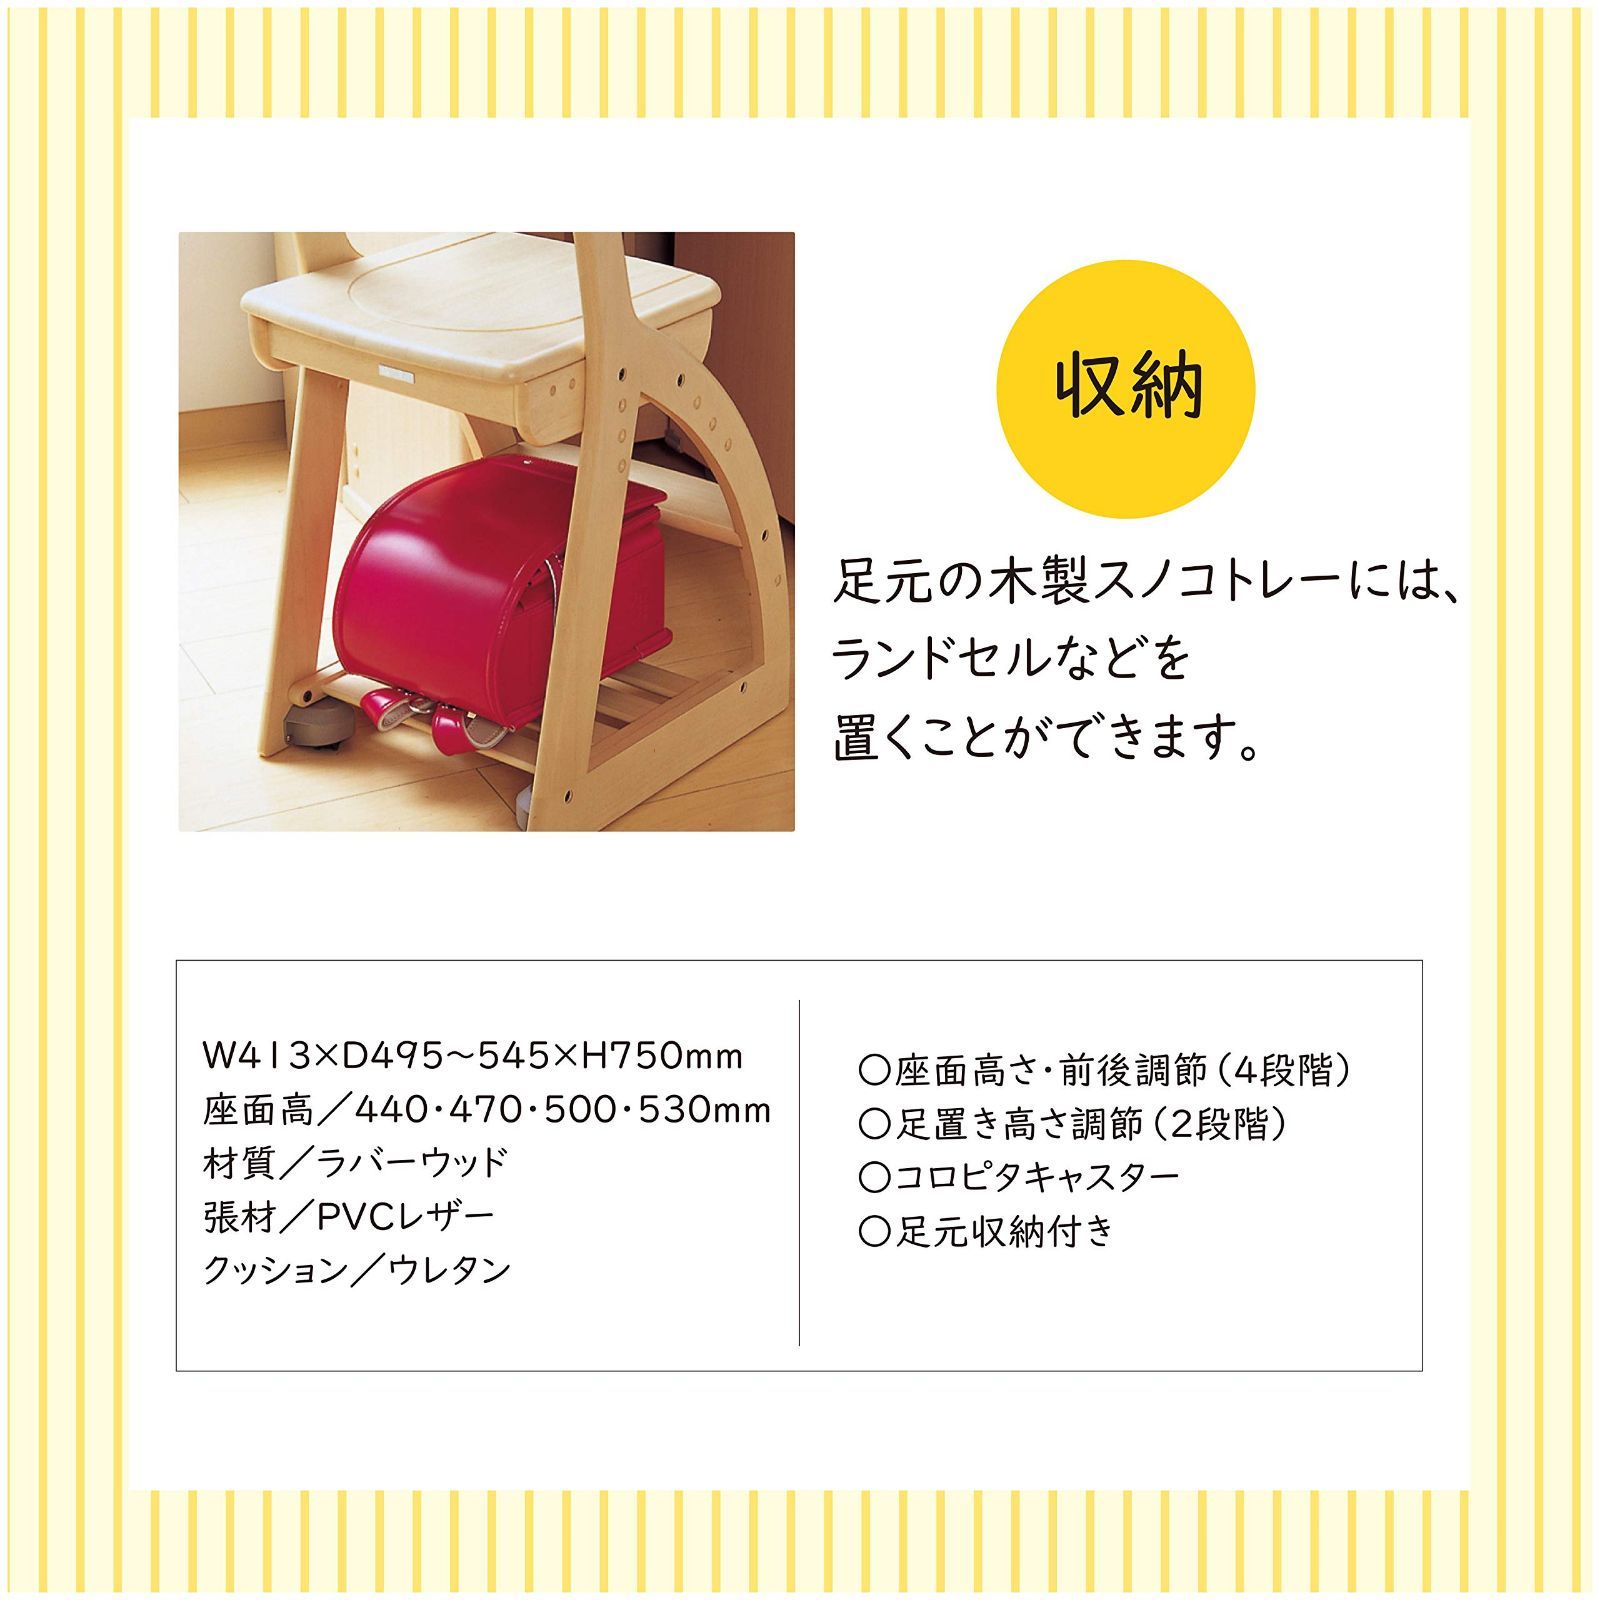 【色: パープル】KOIZUMIコイズミ学習机 学習椅子 パープル サイズ:W4